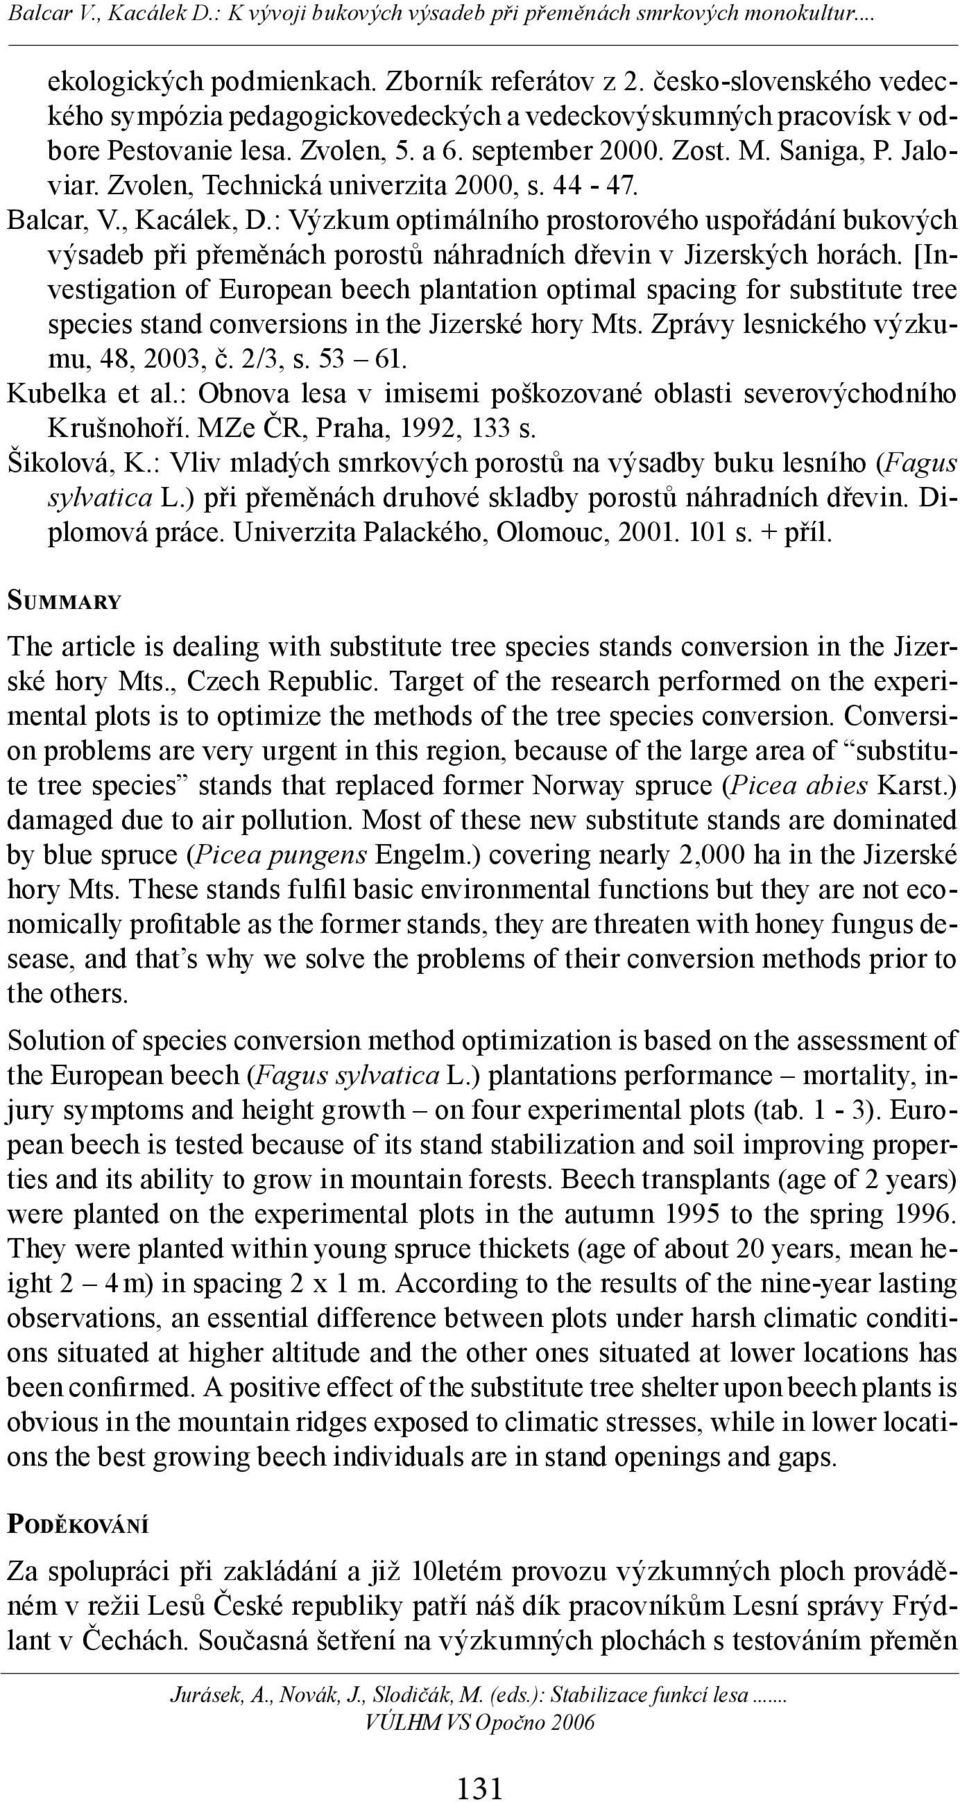 : Výzkum optimálního prostorového uspořádání bukových výsadeb při přeměnách porostů náhradních dřevin v Jizerských horách.